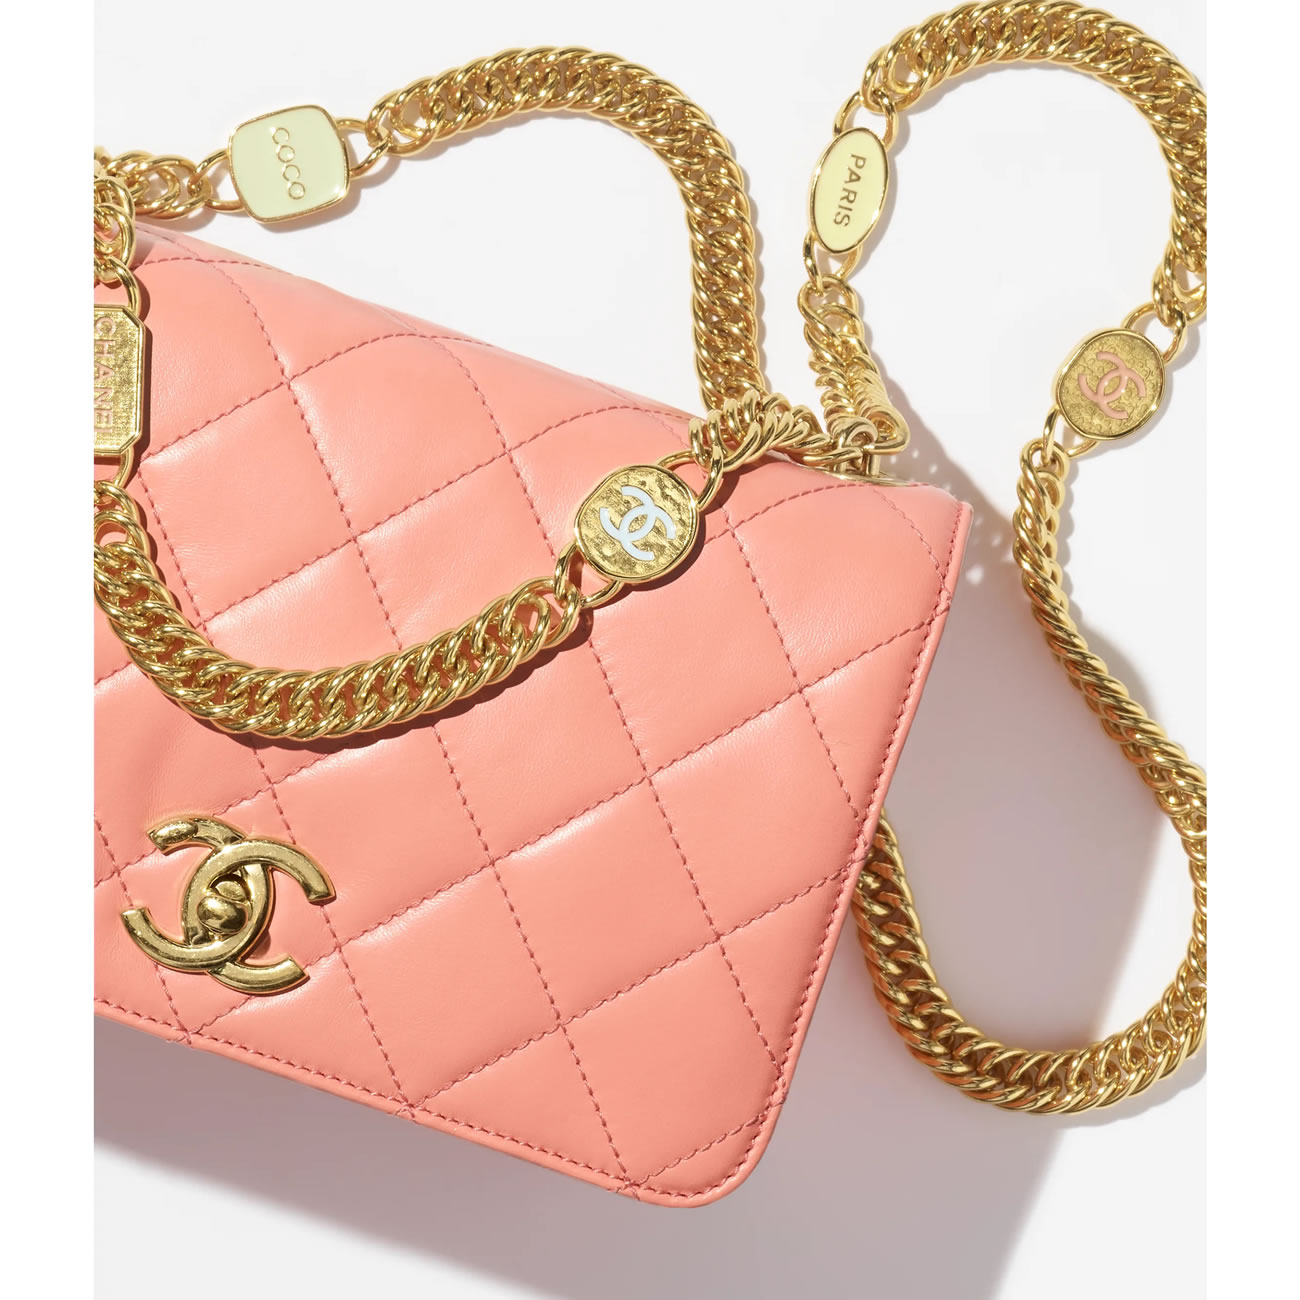 Chanel Flap Bag 26 - kickbulk.co